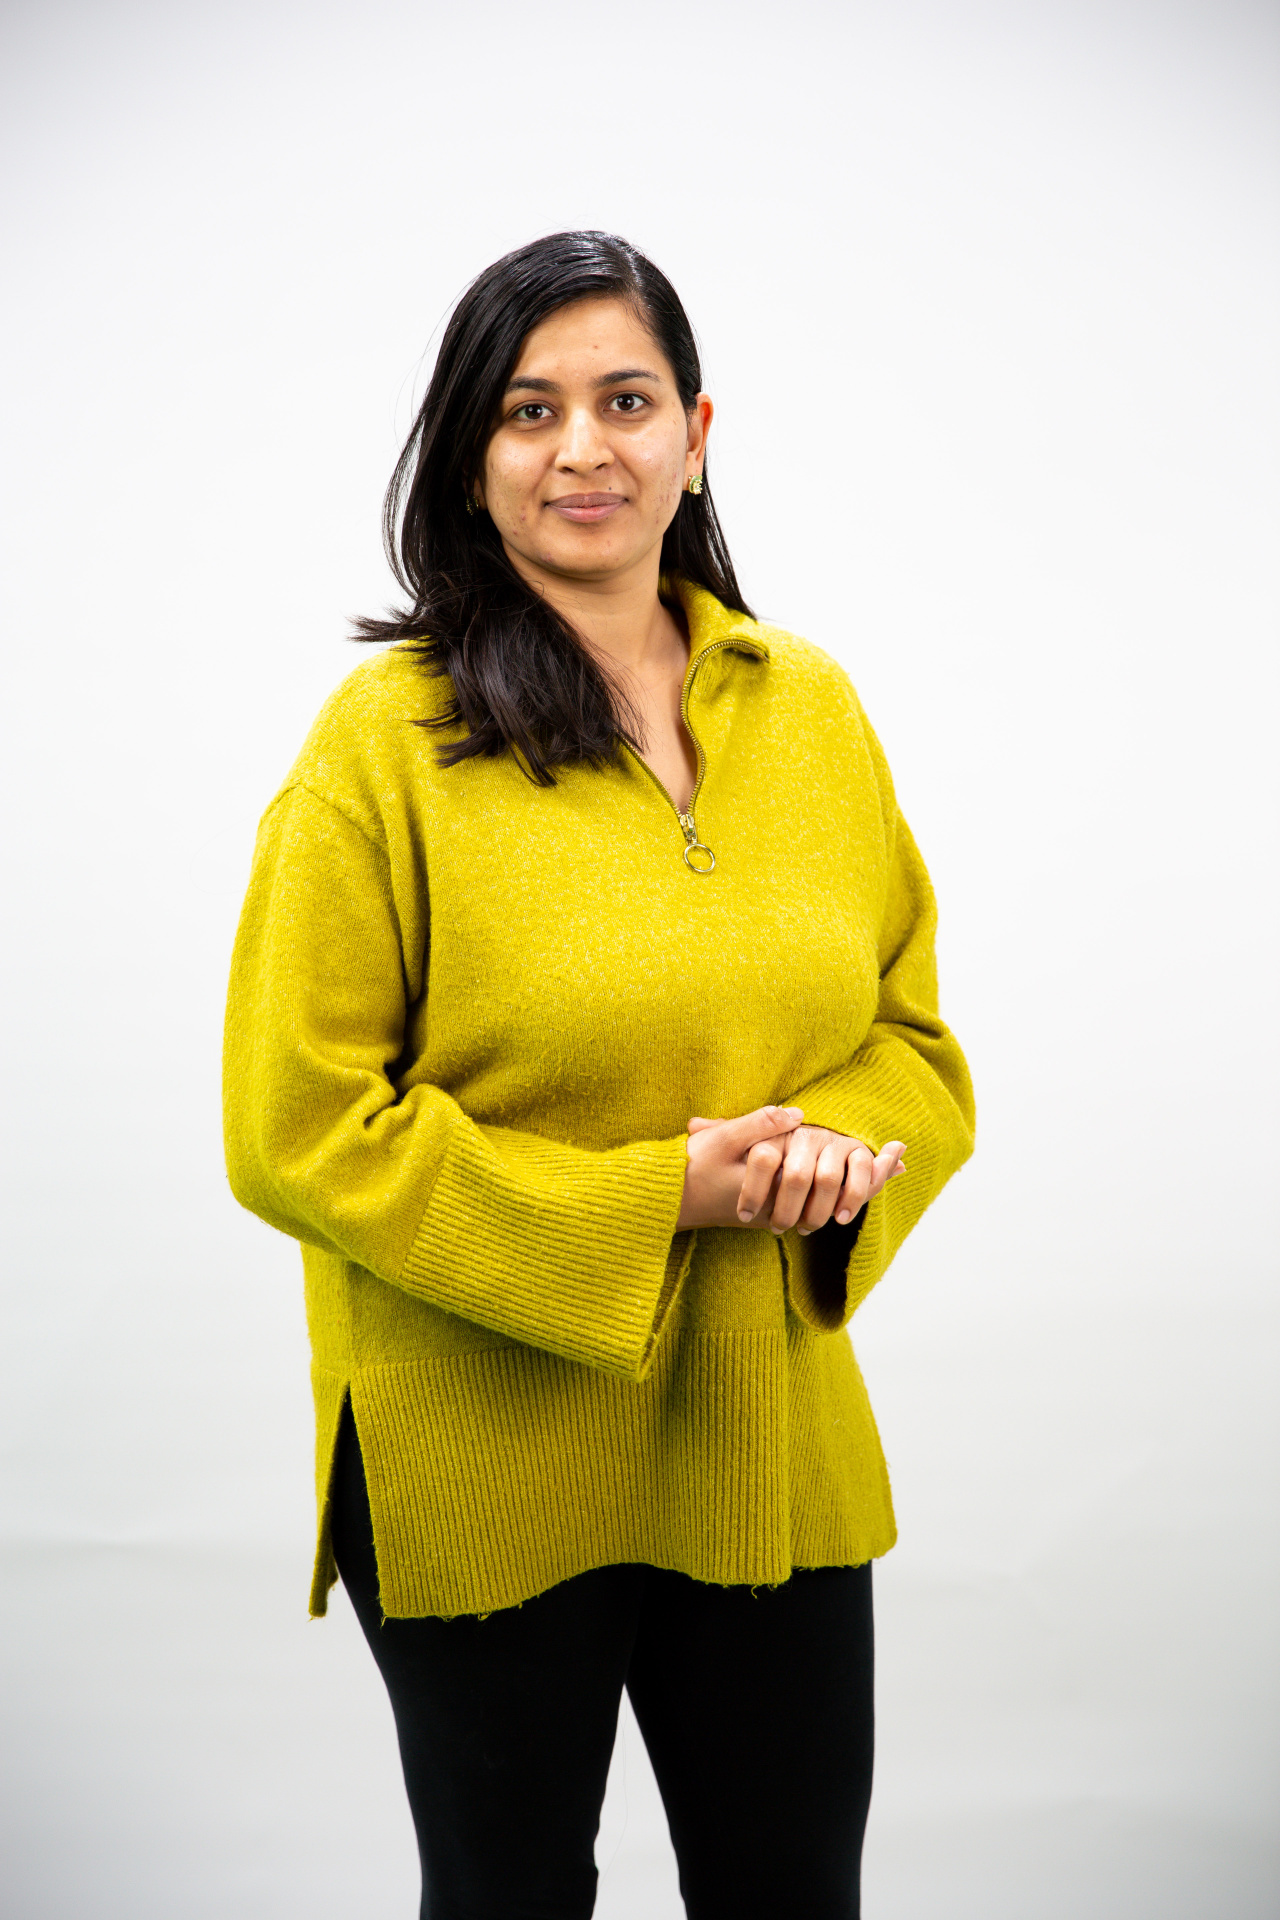 Frau mit schwarzen Haaren und einem gelben Pullover